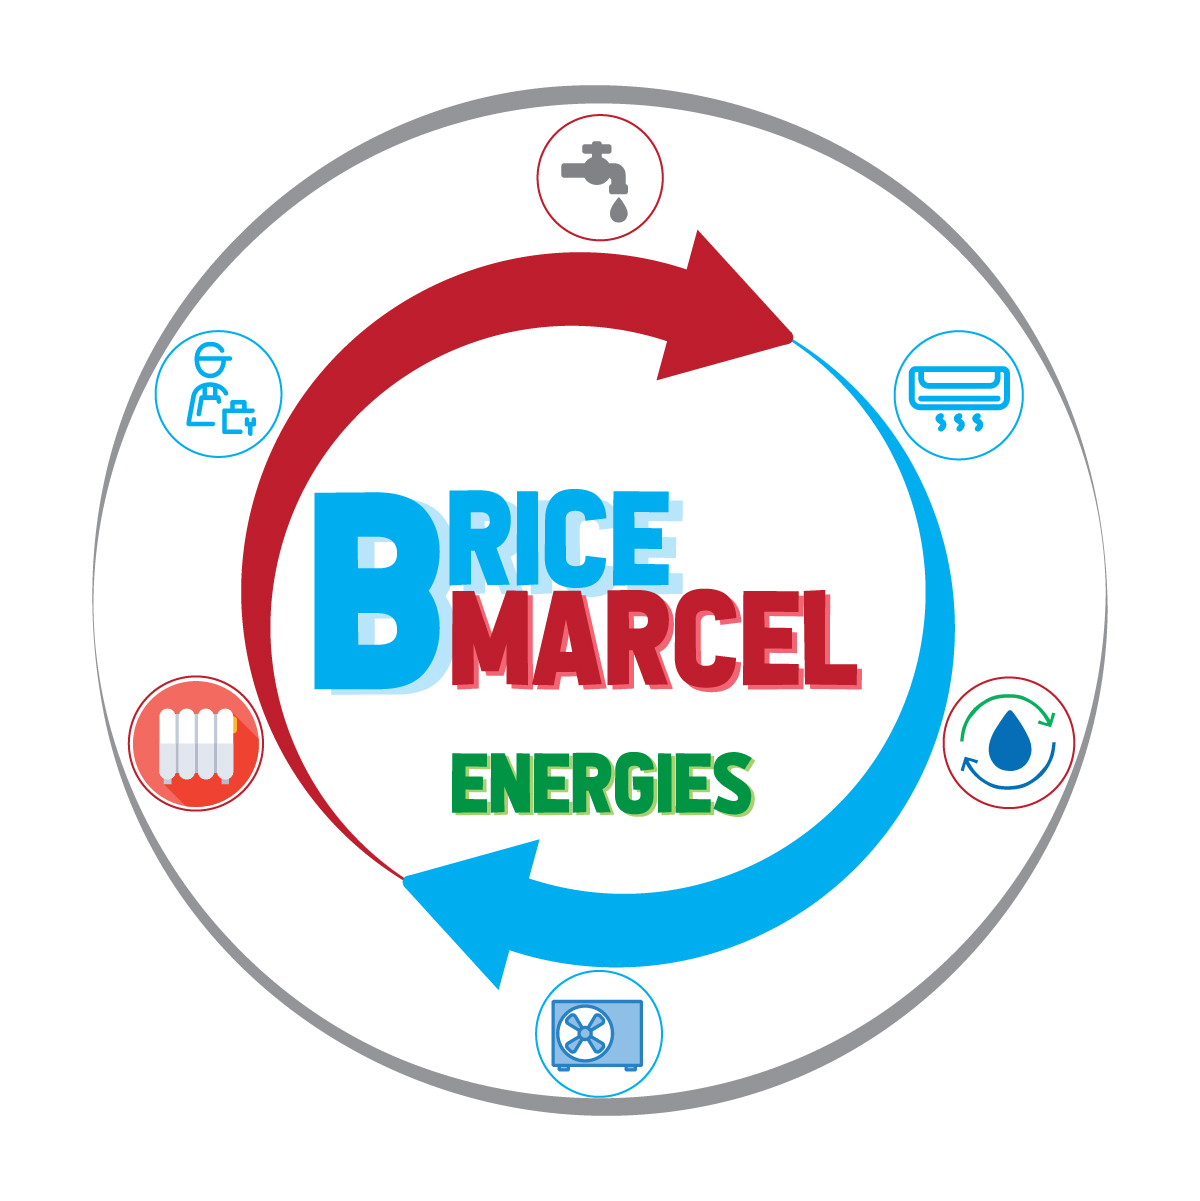 (c) Brice-marcel-energies.com